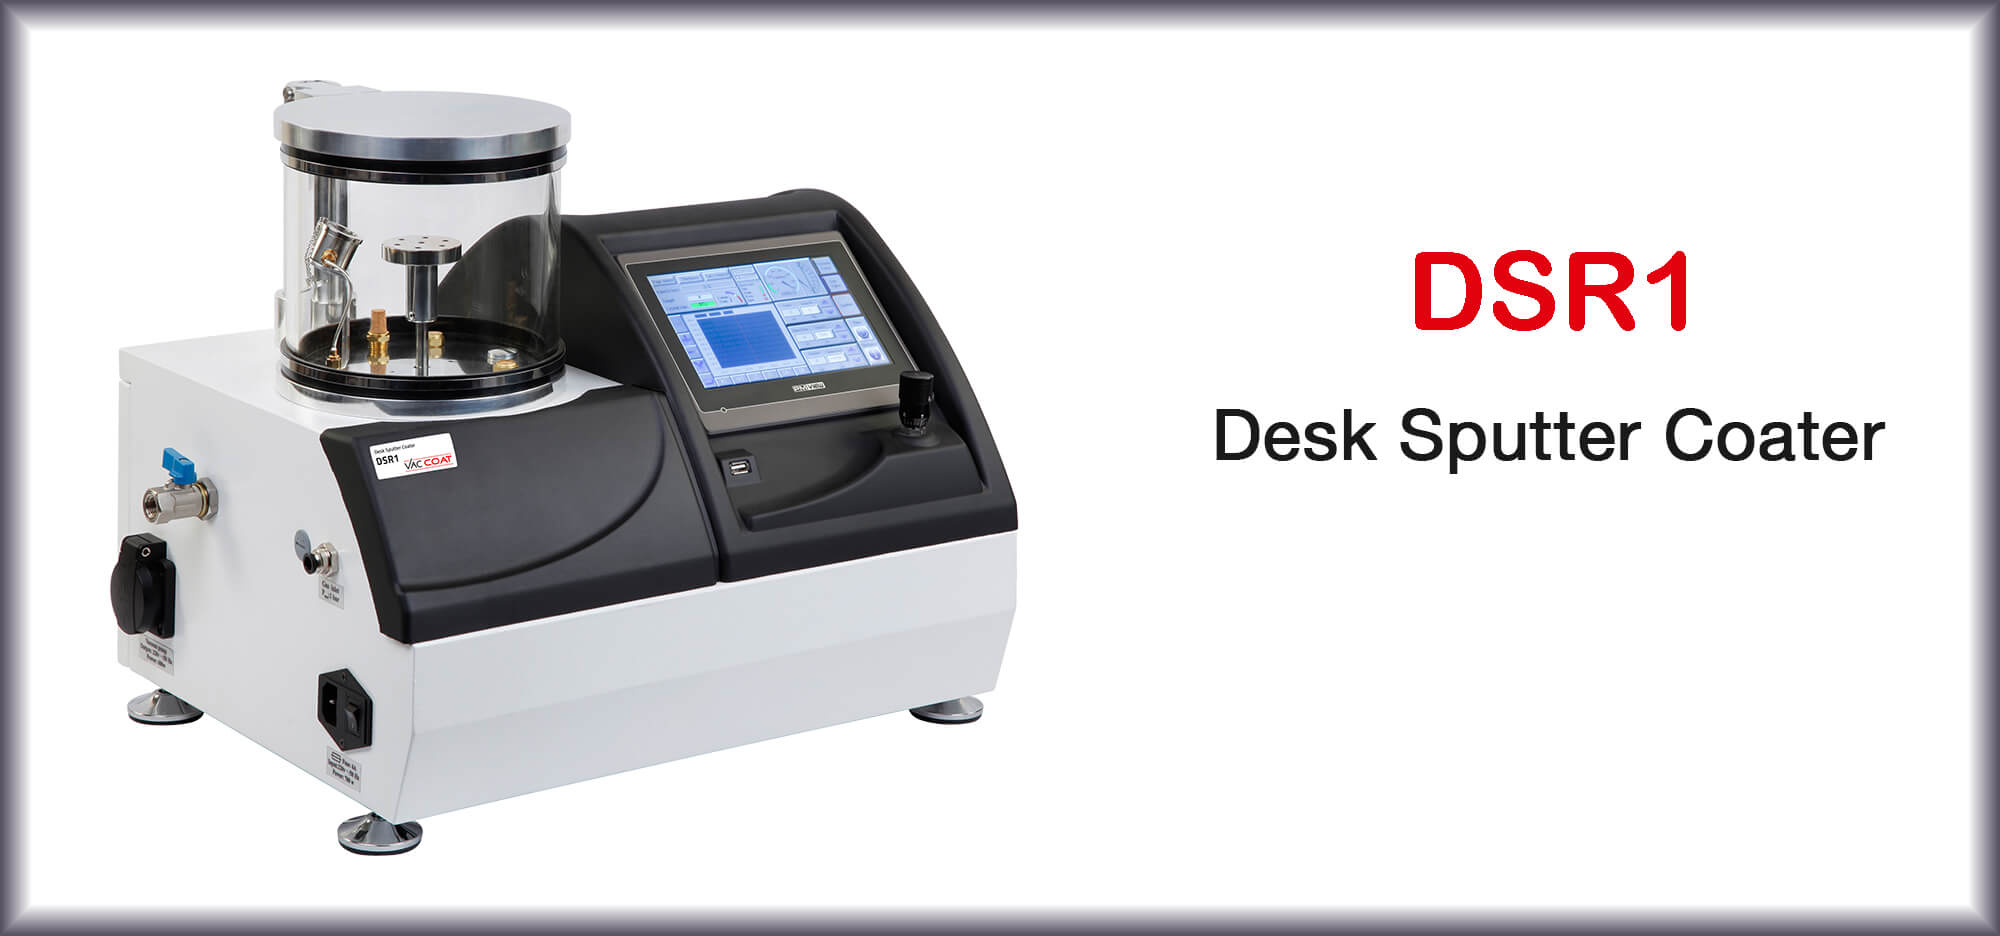 Desk Sputter Coater - DSR1 | VacCoat Product